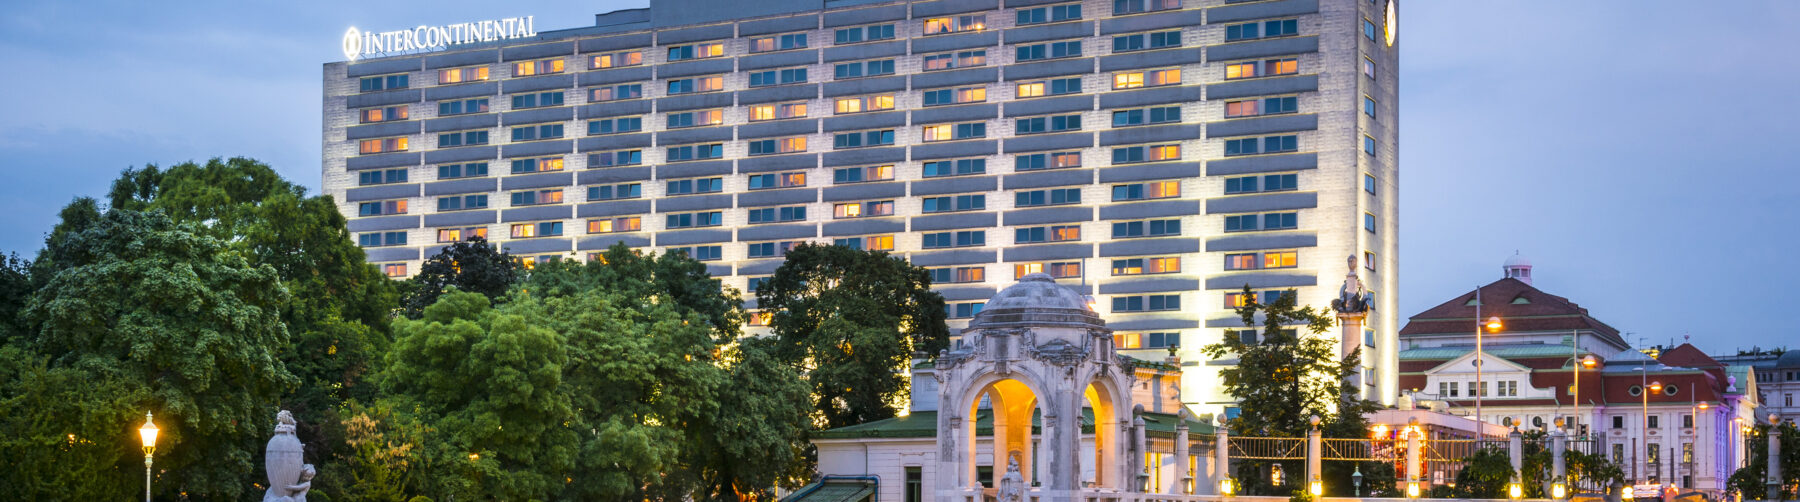 Hotel Intercontinental Vienna